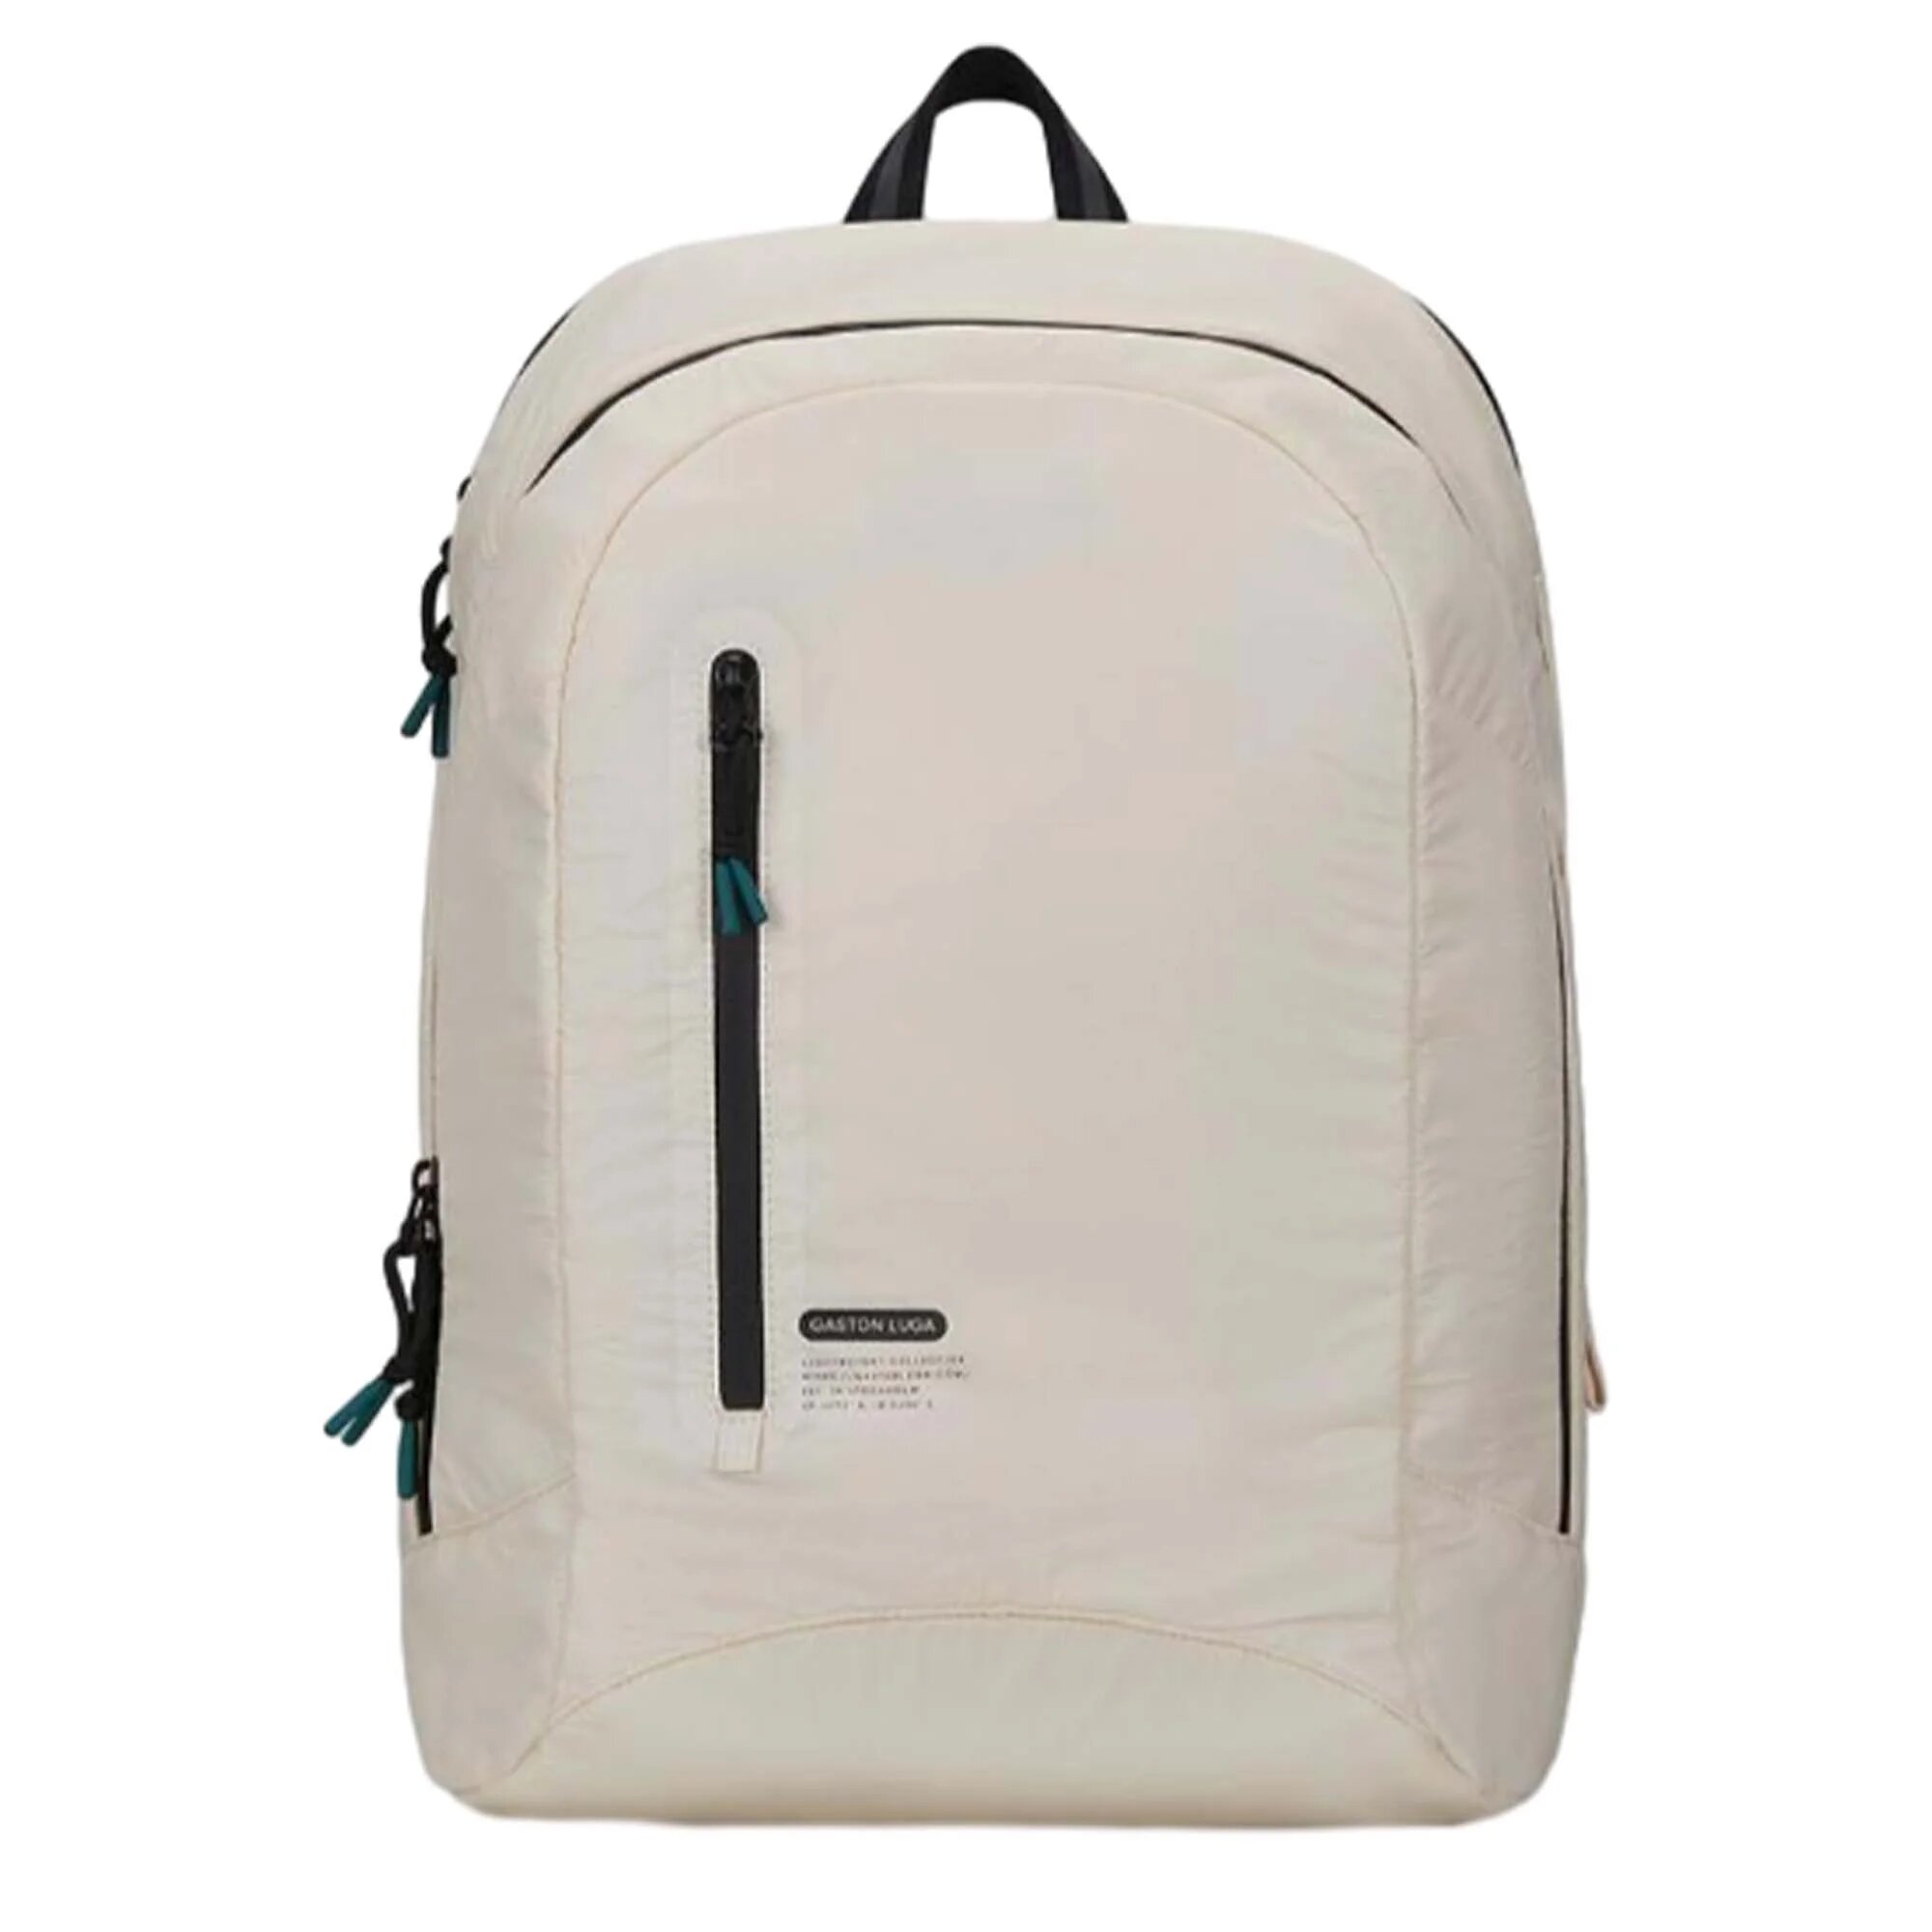 Рюкзак Gaston Luga LW101 Lightweight Backpack 11'-16'. Цвет: слоновая кость